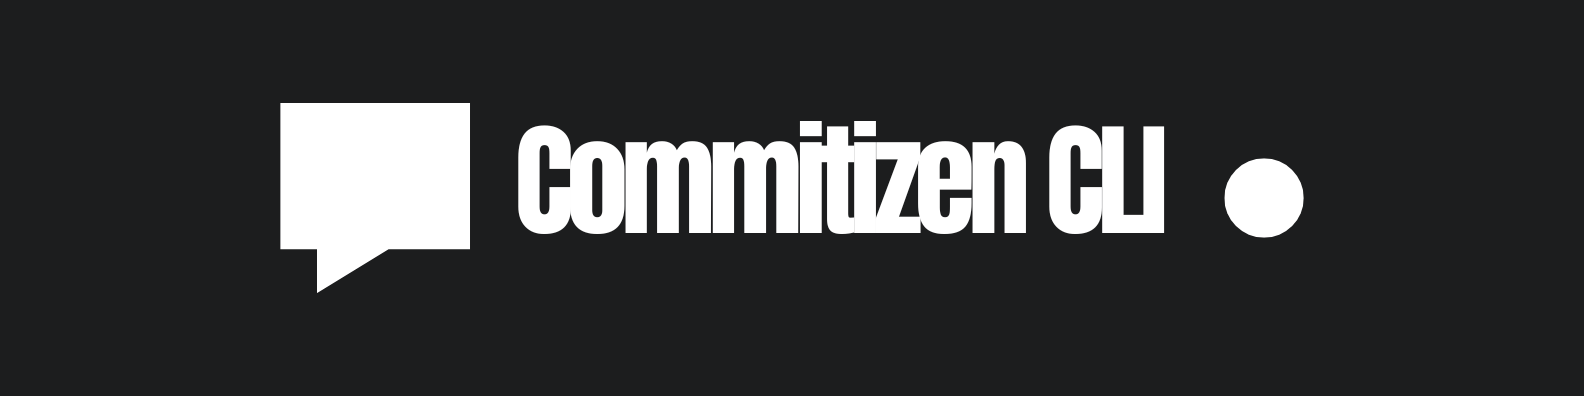 Commitizen CLI